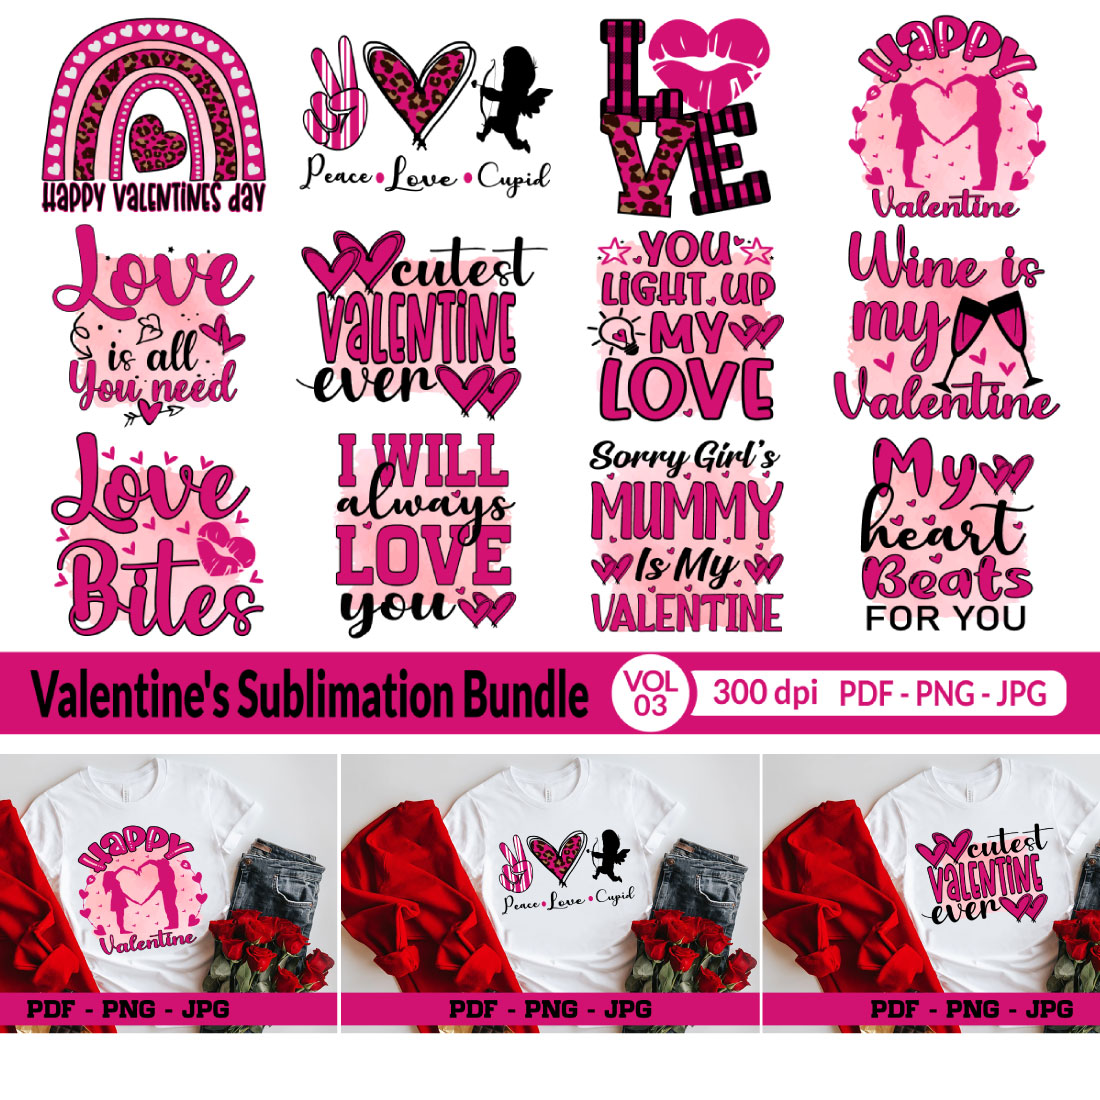 Valentine\'s Sublimation Bundle Vol3 cover image.